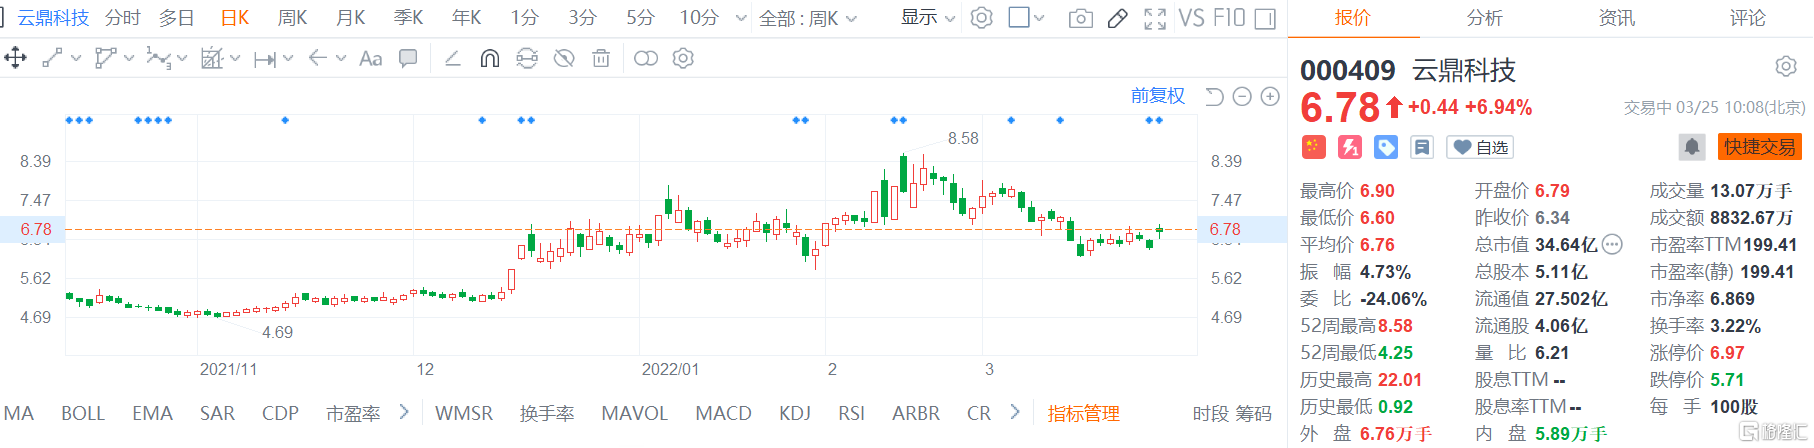 云鼎科技(000409.SZ)股价高位震荡 现报6.78元涨幅7%